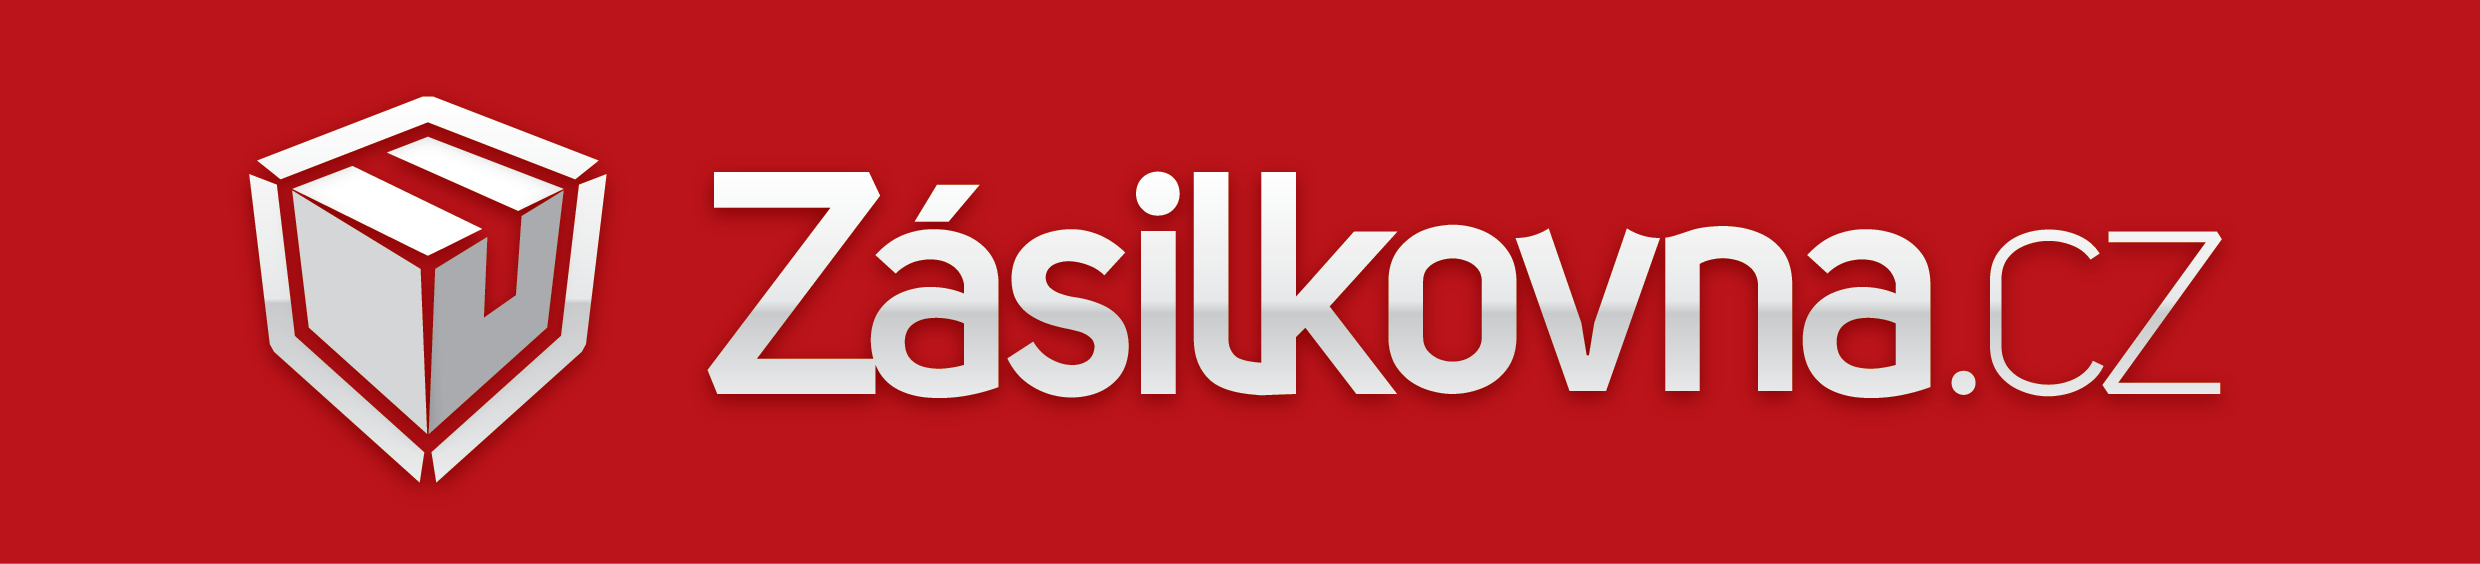 https://www.cvicinka.cz/wp-content/uploads/2020/06/Zasilkovna_logo_obdelnik_zakladni_verze_TISK.png